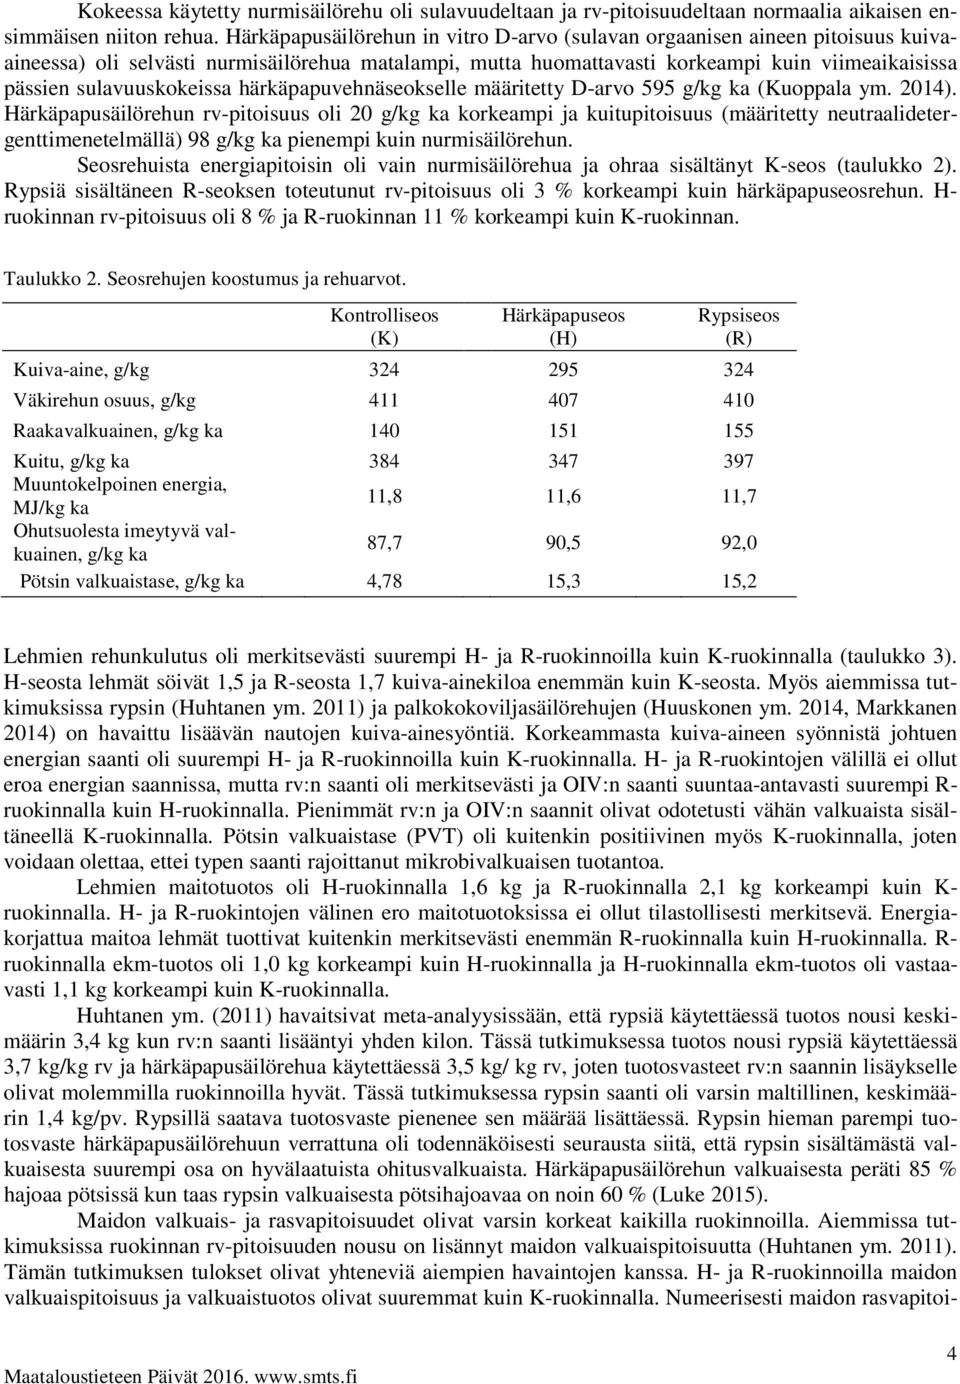 sulavuuskokeissa härkäpapuvehnäseokselle määritetty D-arvo 595 g/kg ka (Kuoppala ym. 2014).